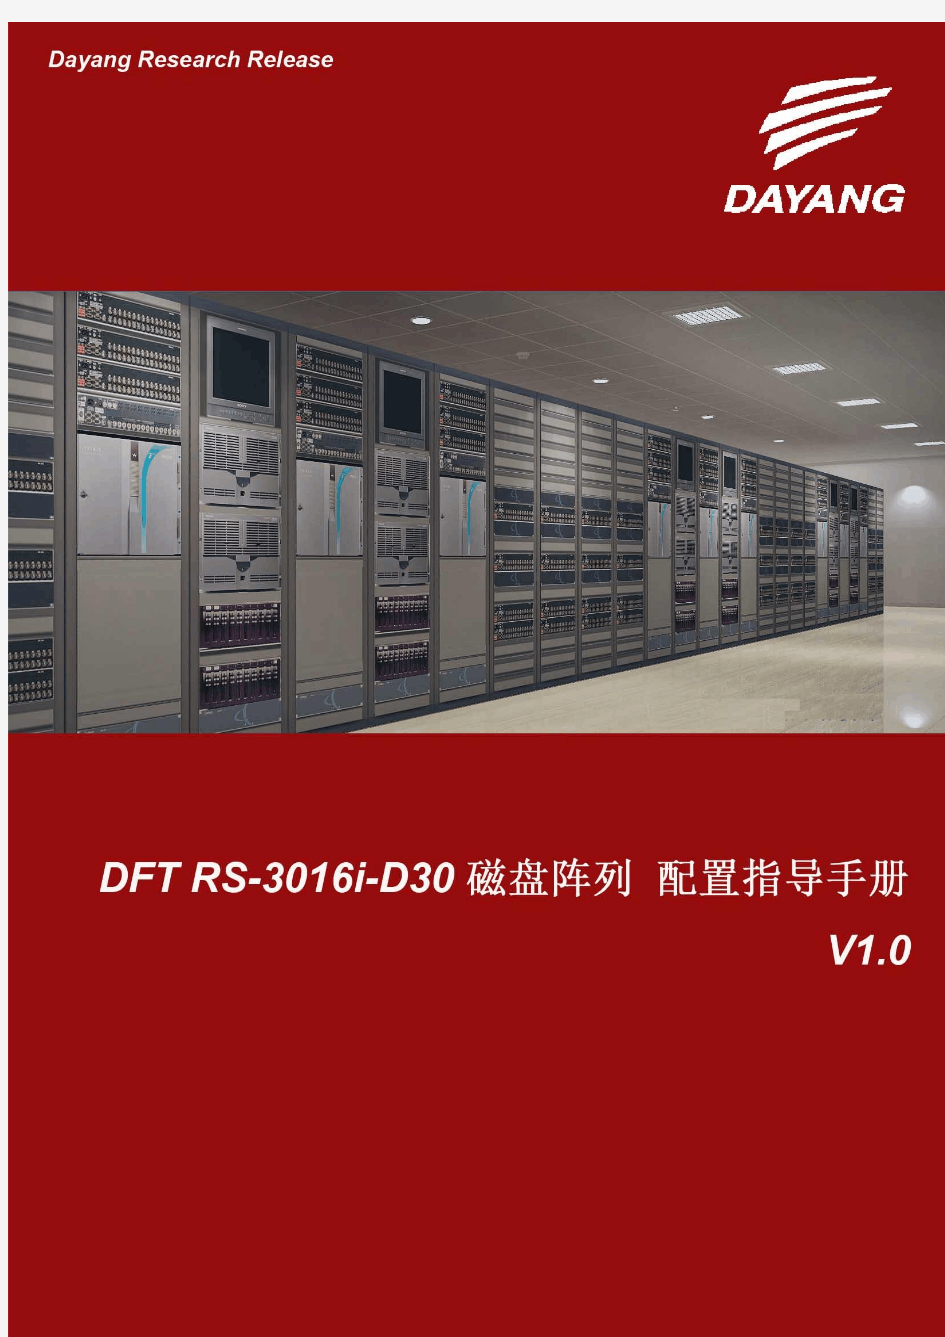 DFT RS-3016i-D30存储安装配置指导手册 V1.0B(正稿)